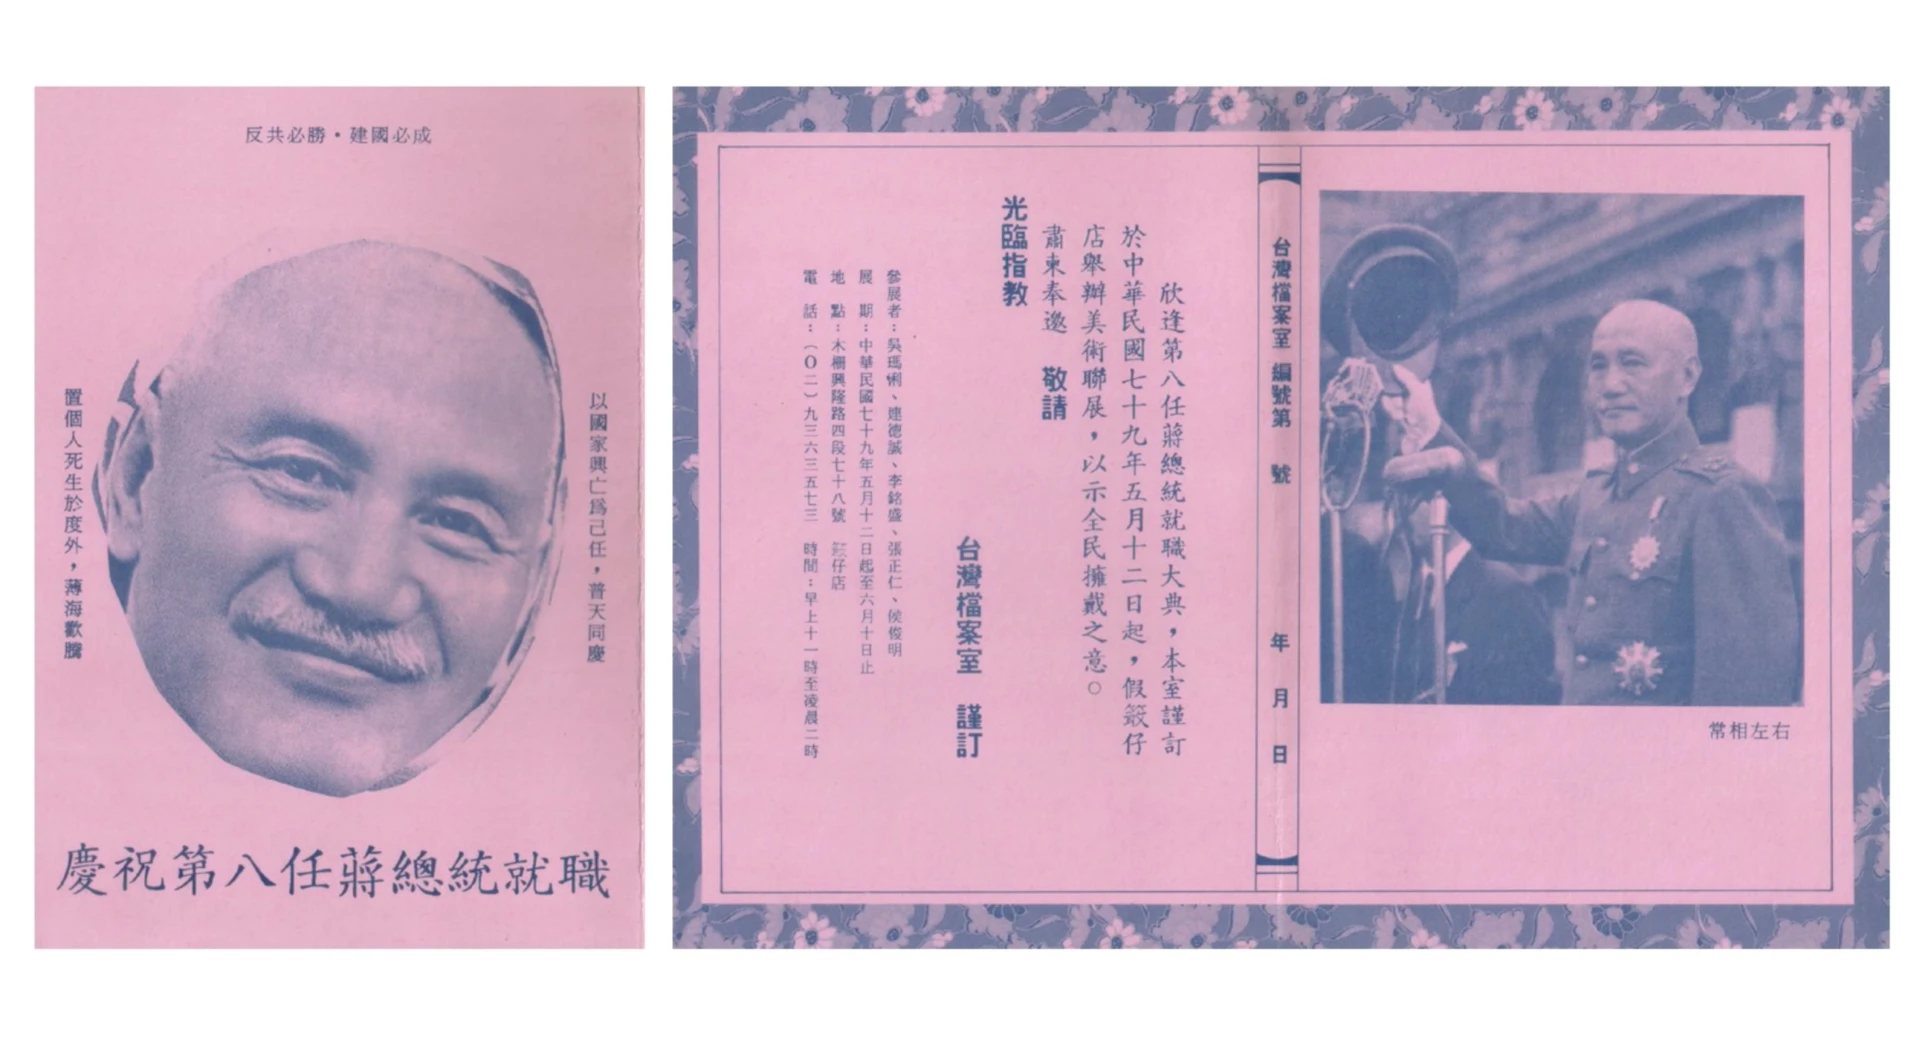 「台灣檔案室」首次展覽「慶祝第八任蔣總統就職」之邀請卡，展覽借用優劇場空間展出，1990 ©吳瑪悧提供-圖片